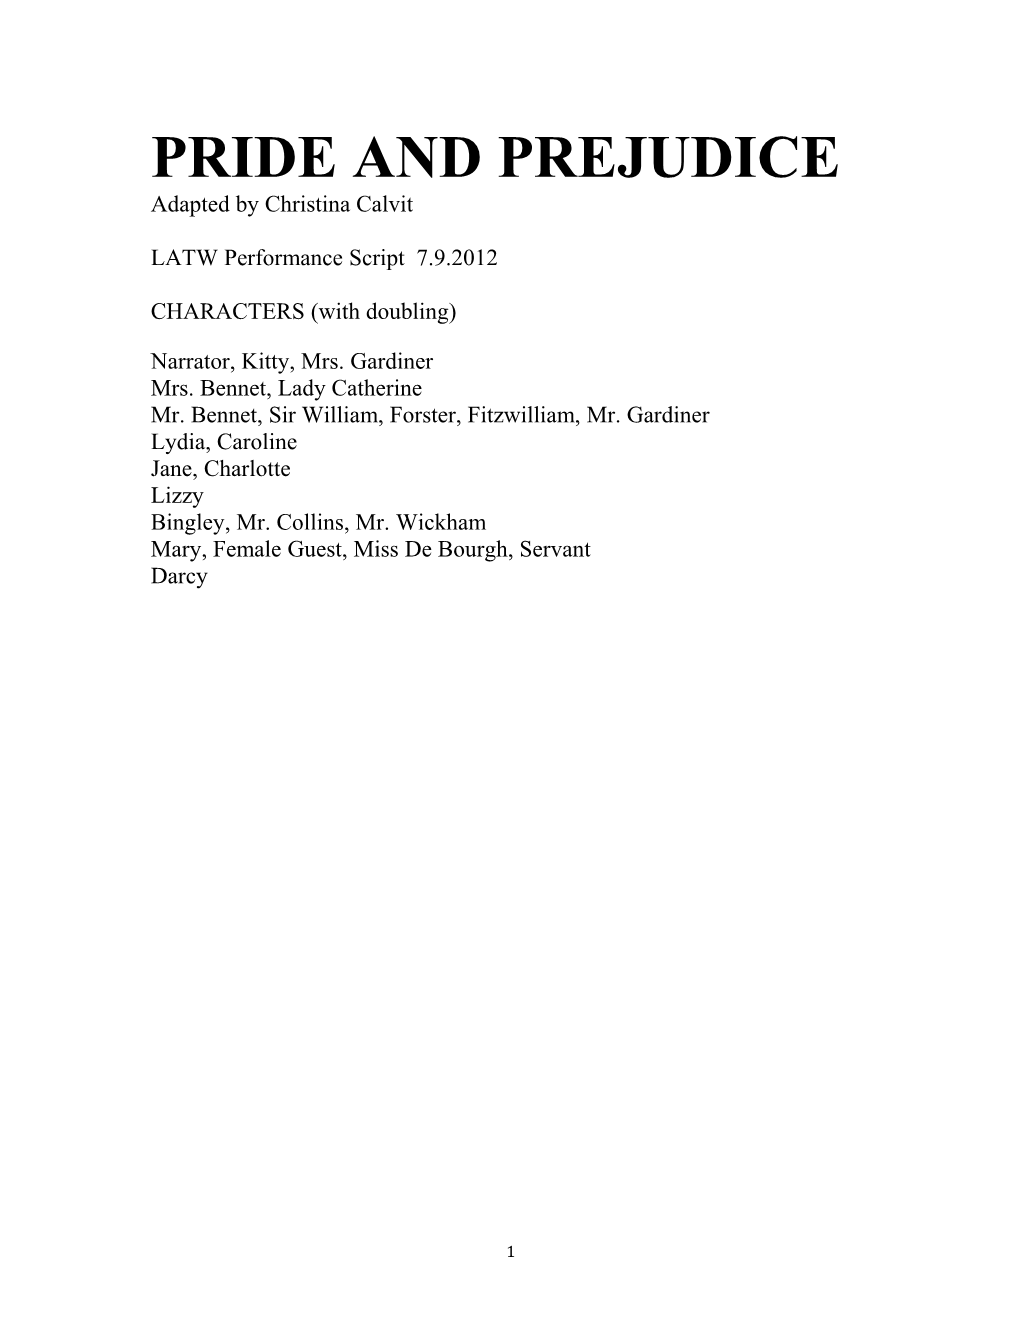 Pride and Prejudice s1